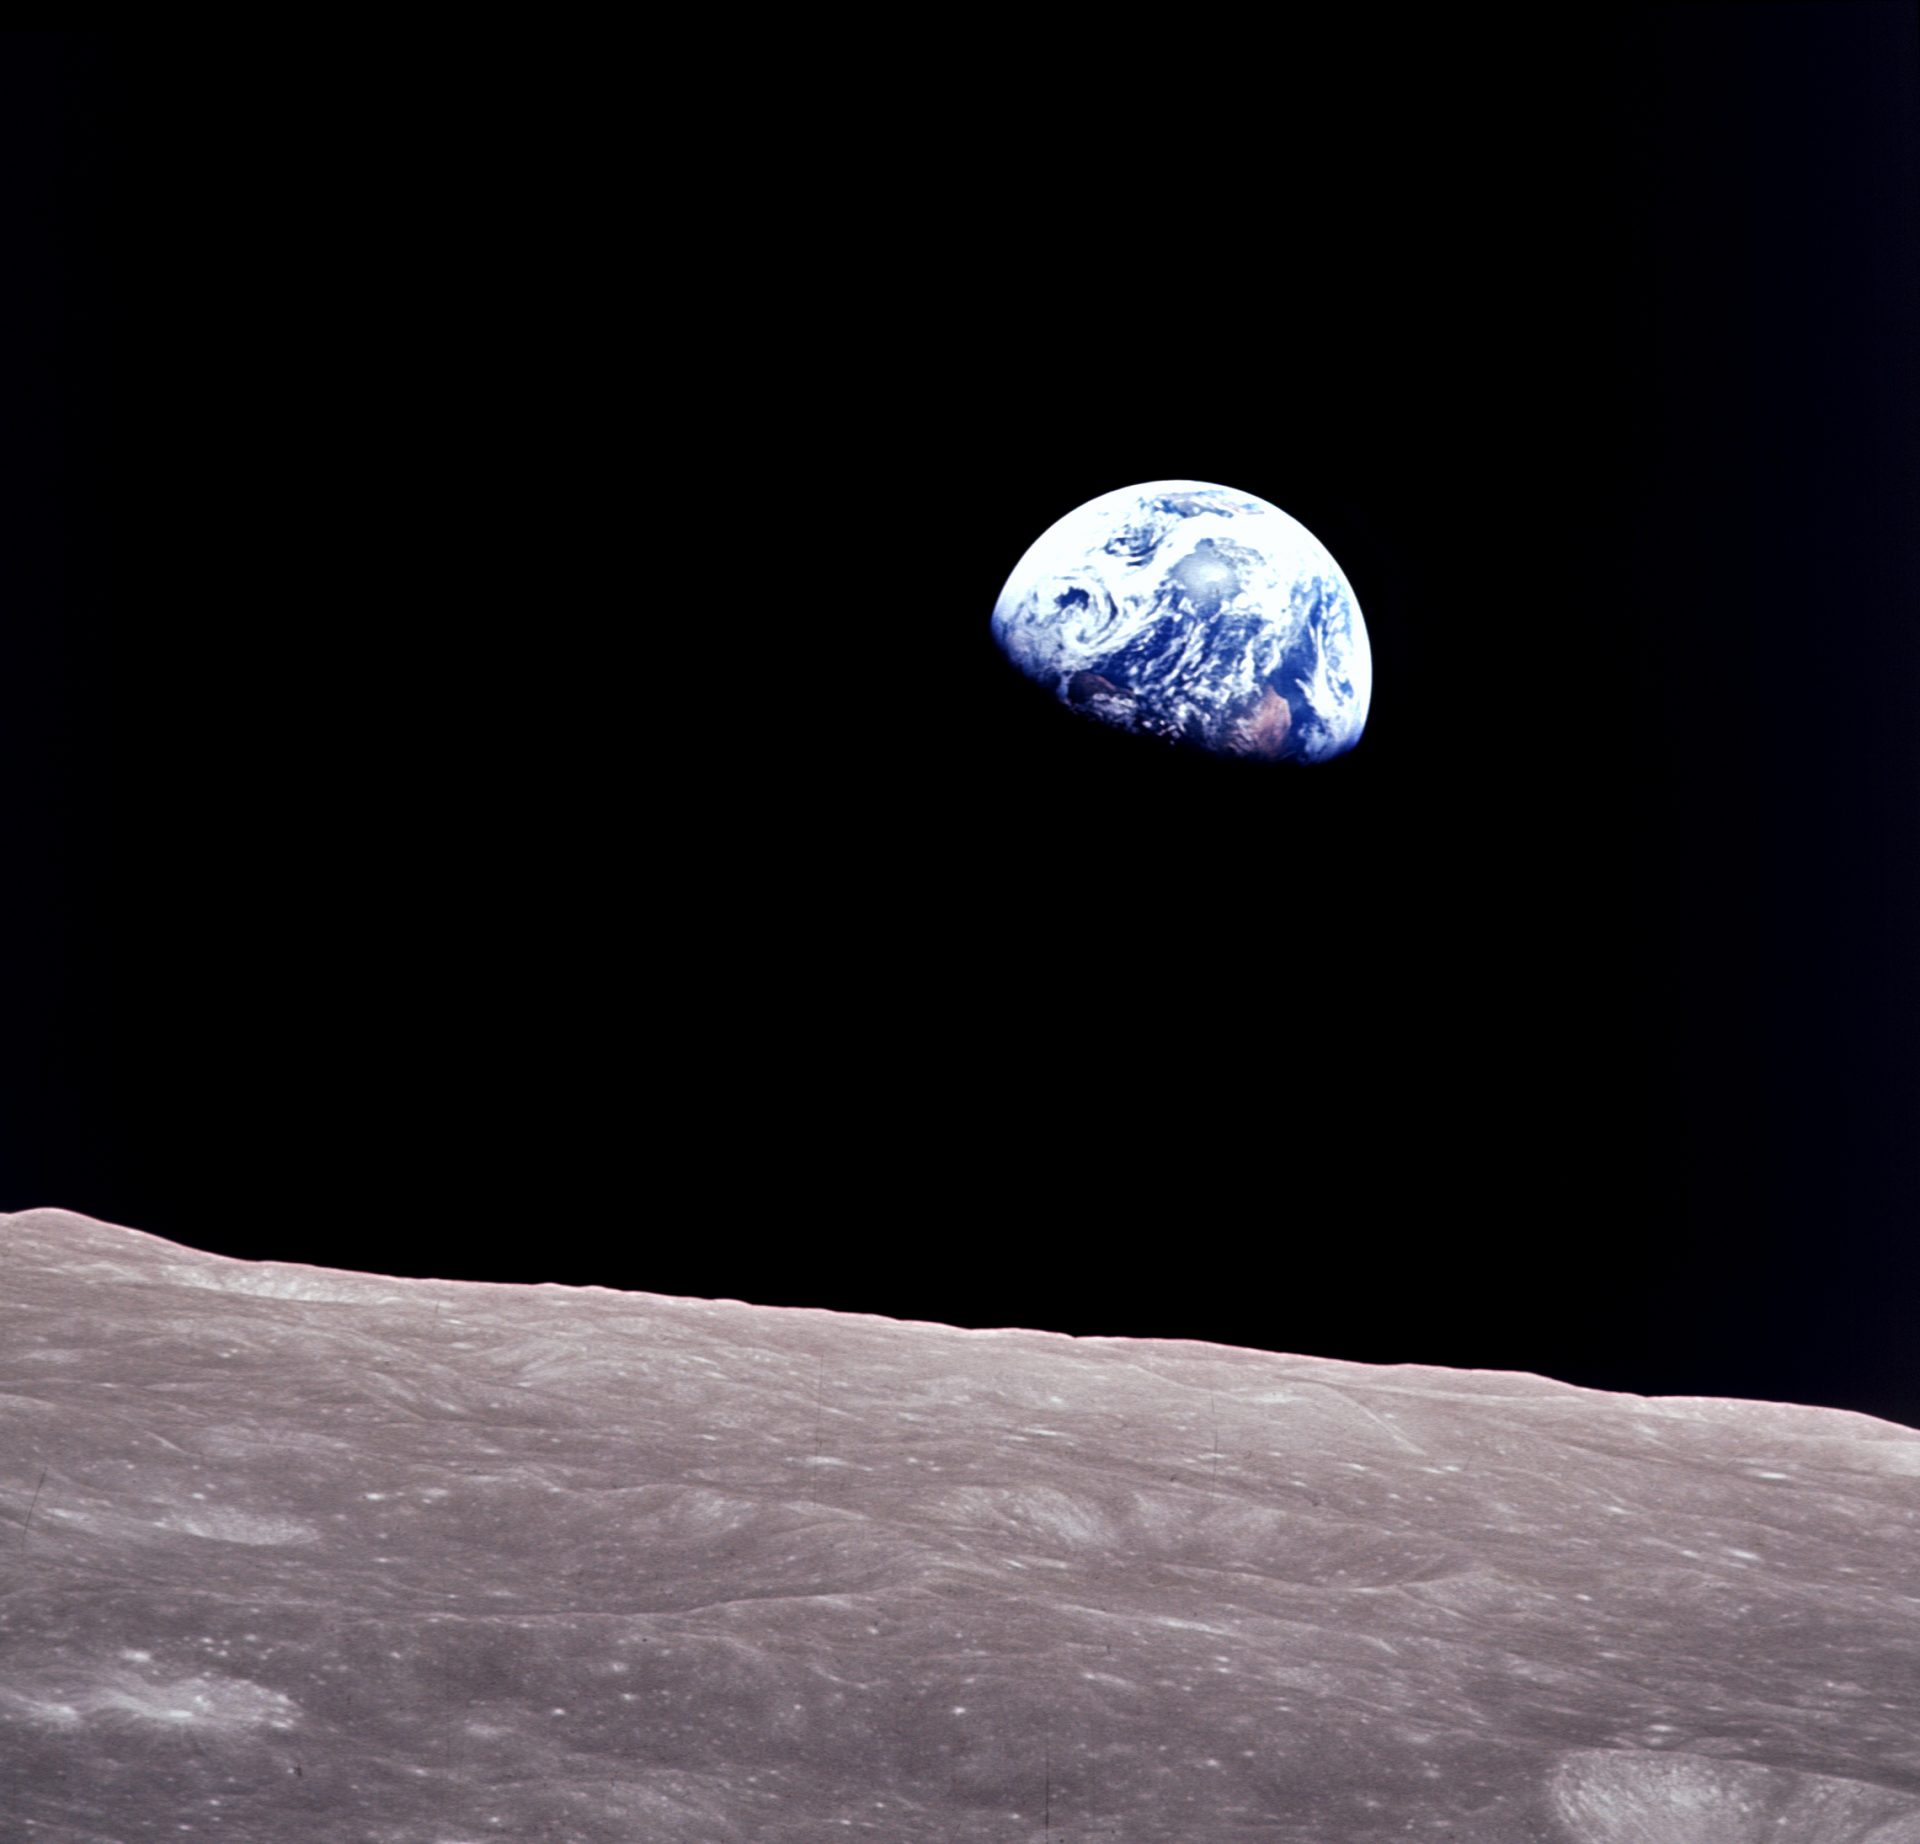 Apollo 8 earthrise